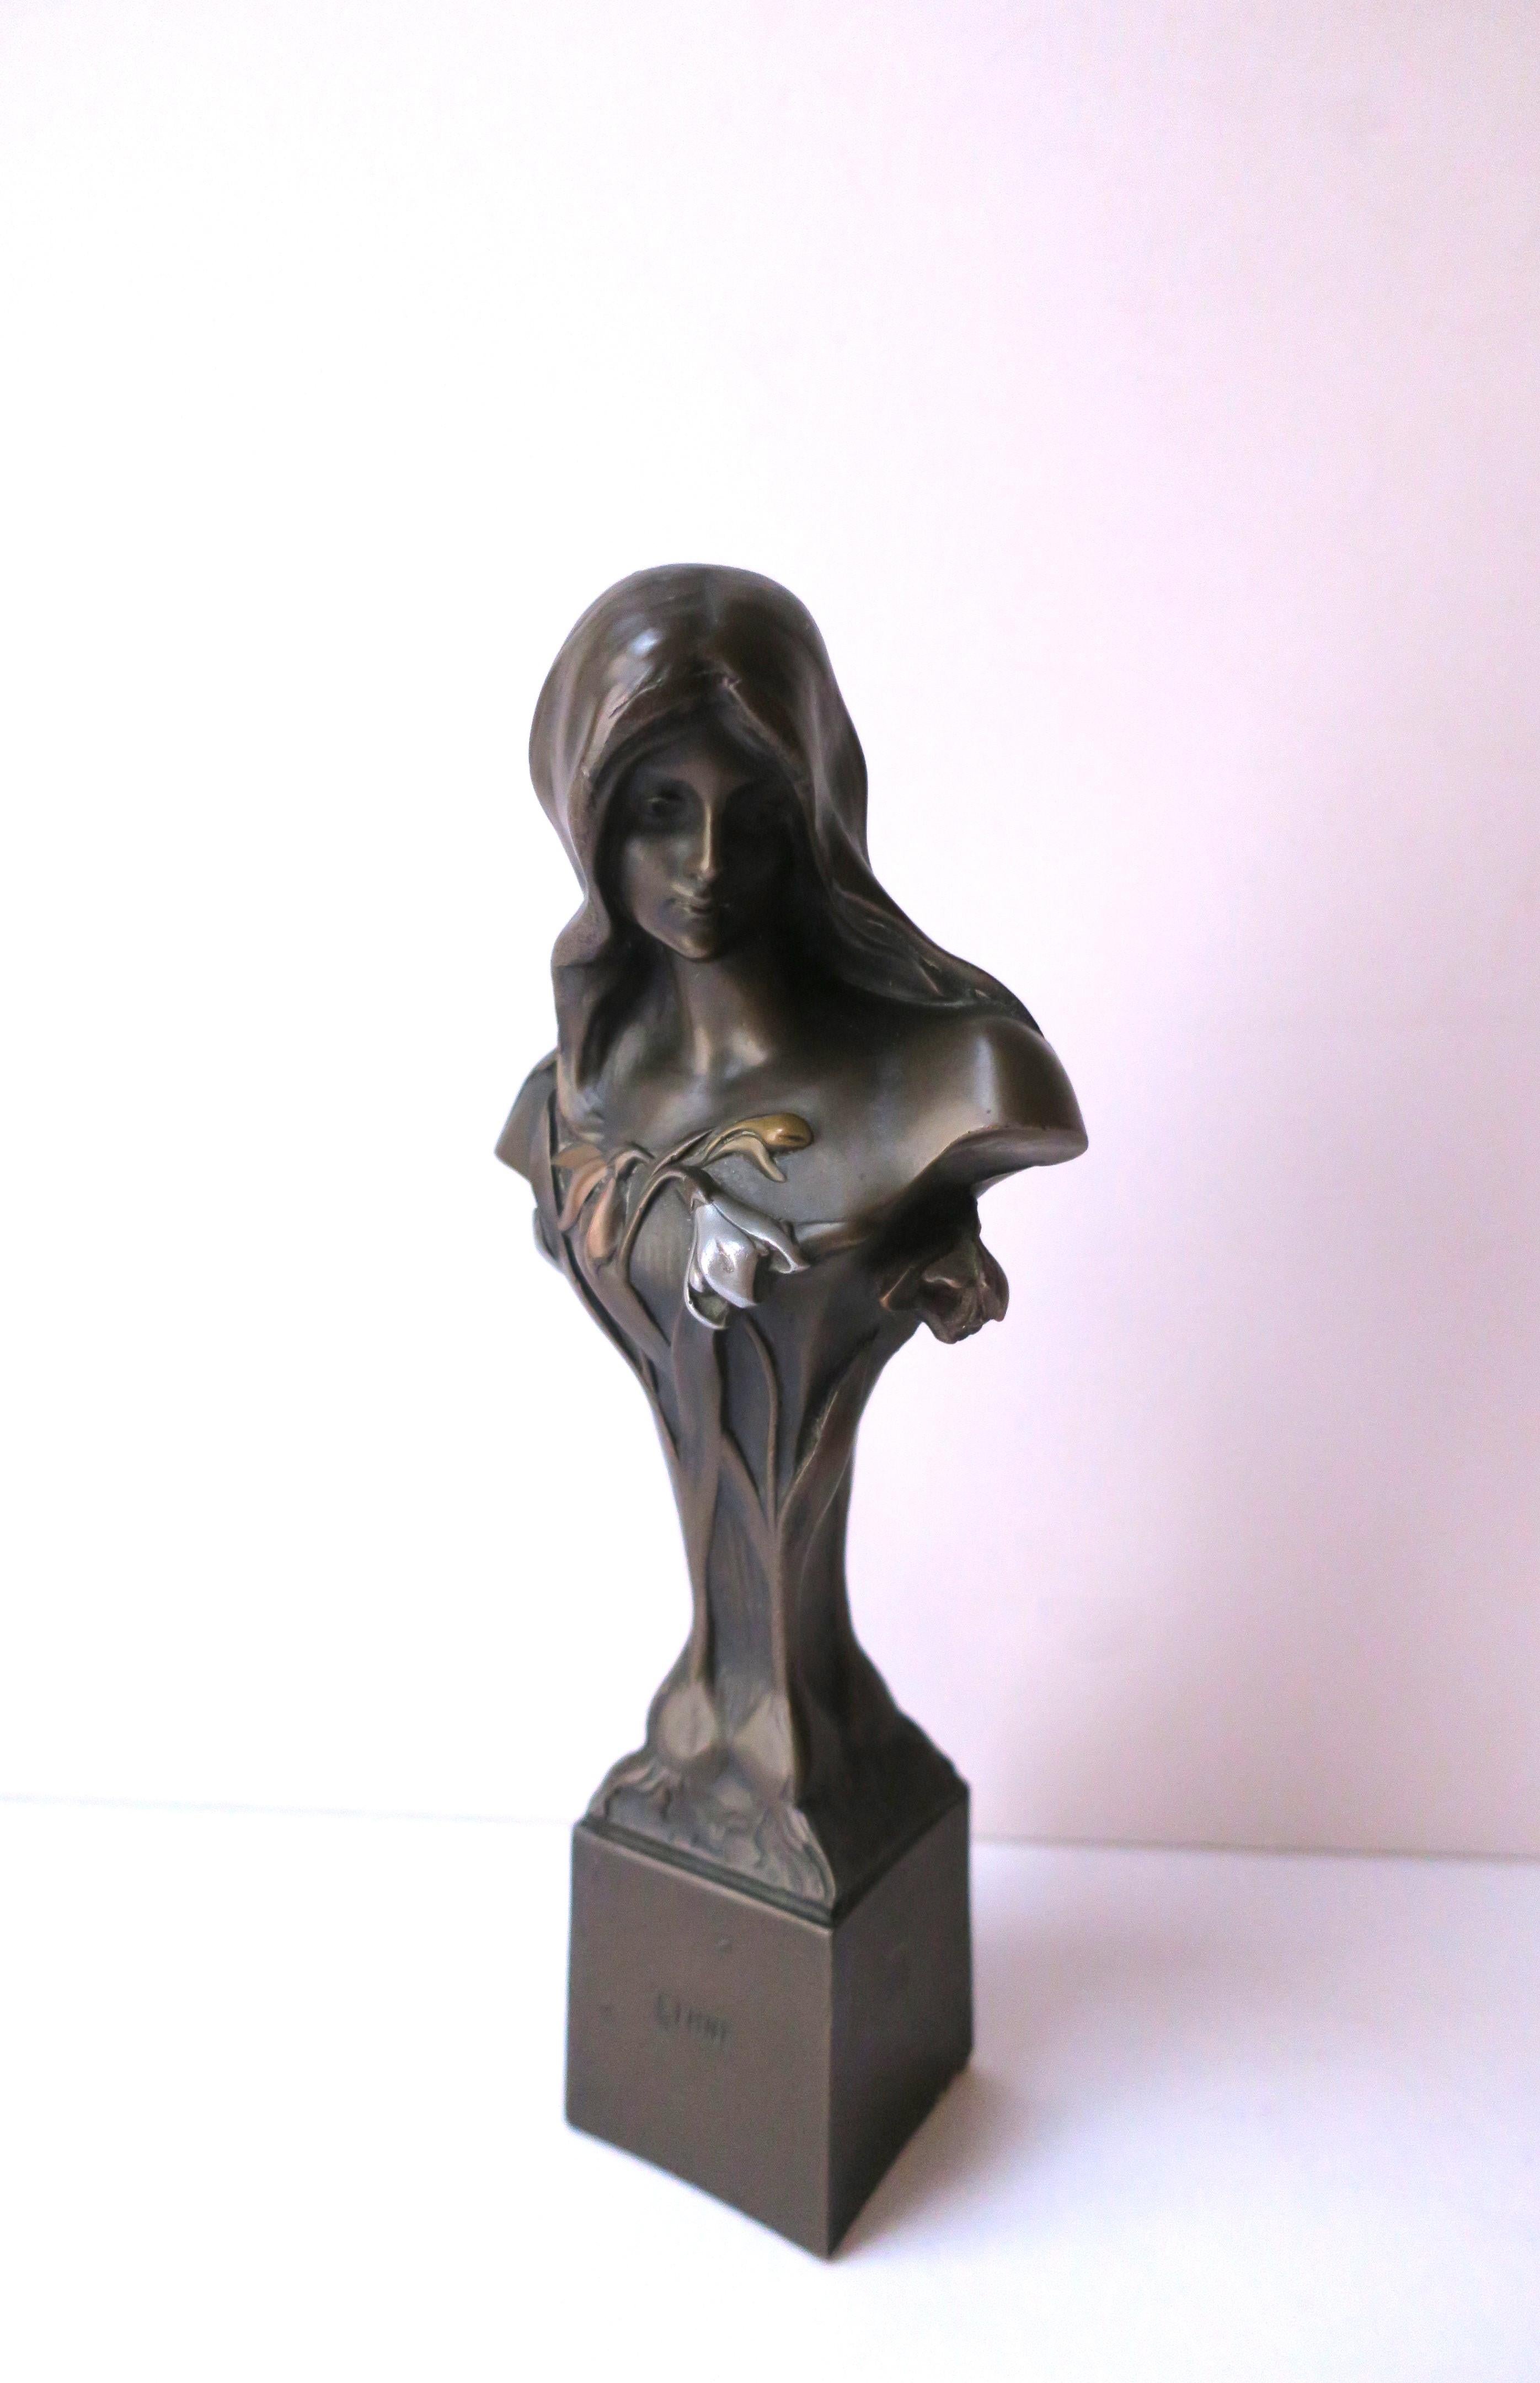 20th Century Art Nouveau Female Bronze Figurative Bust Sculpture by Giovanni Schoeman  For Sale